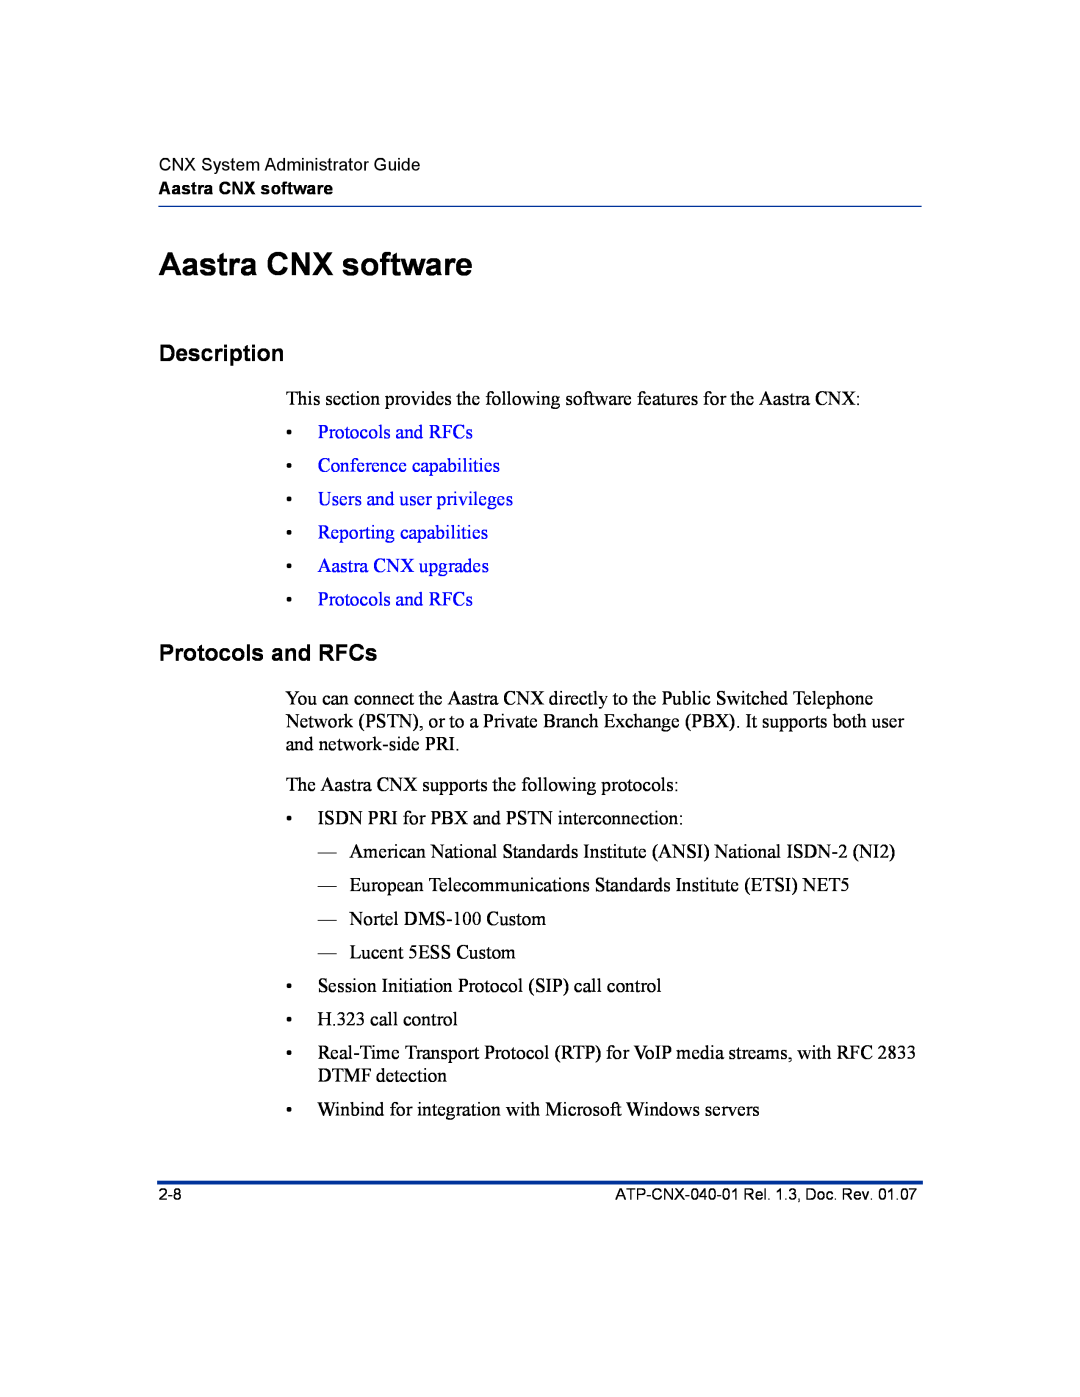 Aastra Telecom ATP-CNX-040-01 manual Aastra CNX software, Protocols and RFCs, Description 